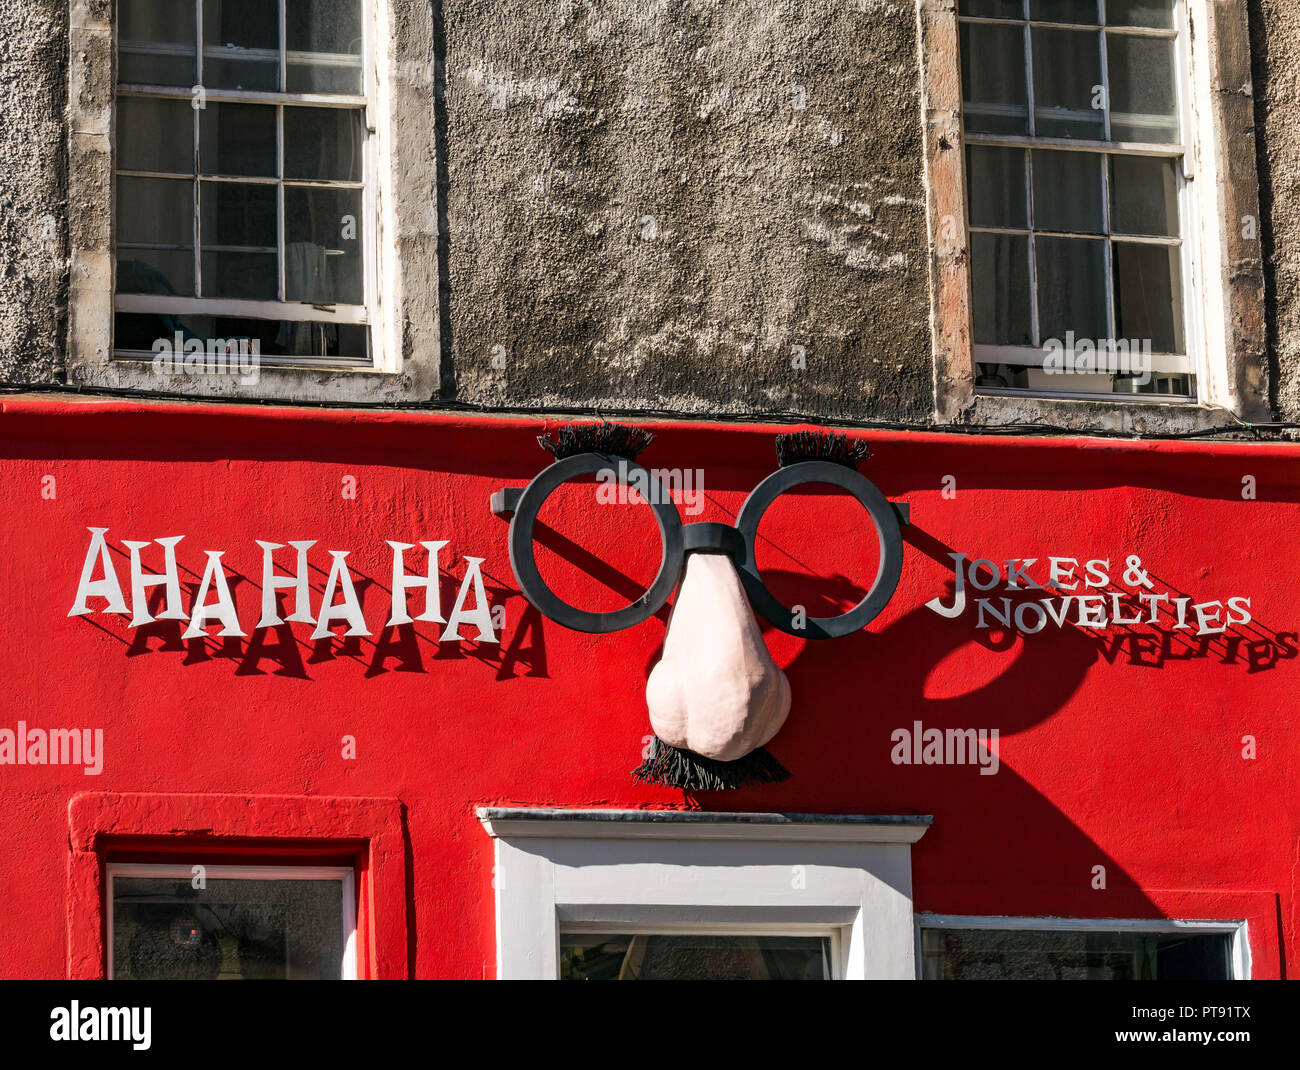 Façade de la plaisanterie et la nouveauté shop appelé Aha ha ha avec drôle gros nez et des lunettes, West Bow, Édimbourg, Écosse, Royaume-Uni Banque D'Images